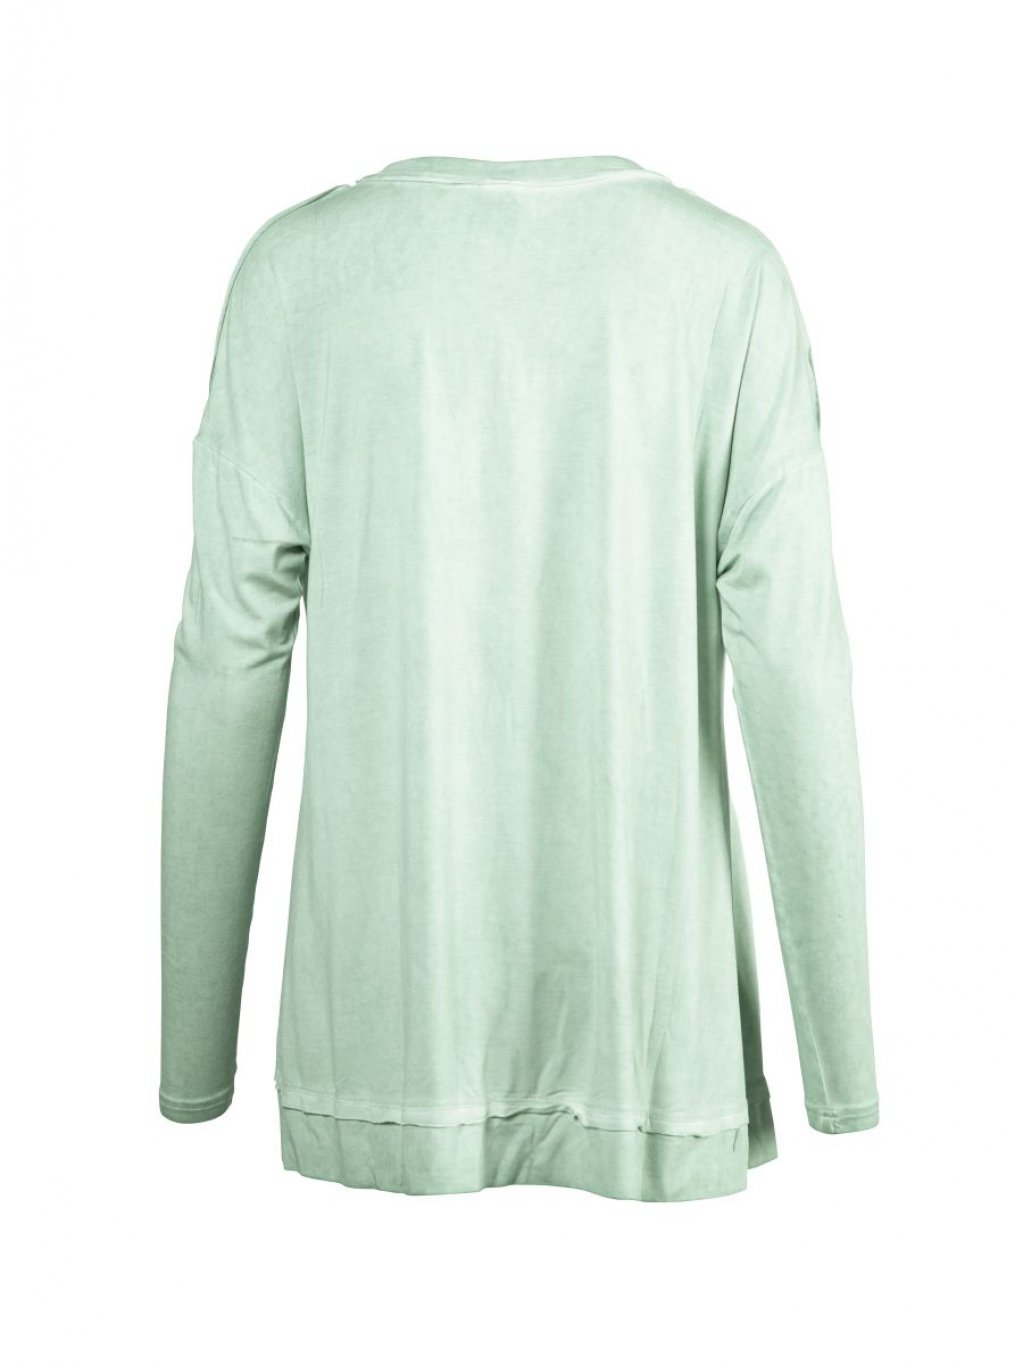 Tričko NU Denmark 7567-50 jemně zelené s výstřihem do V 